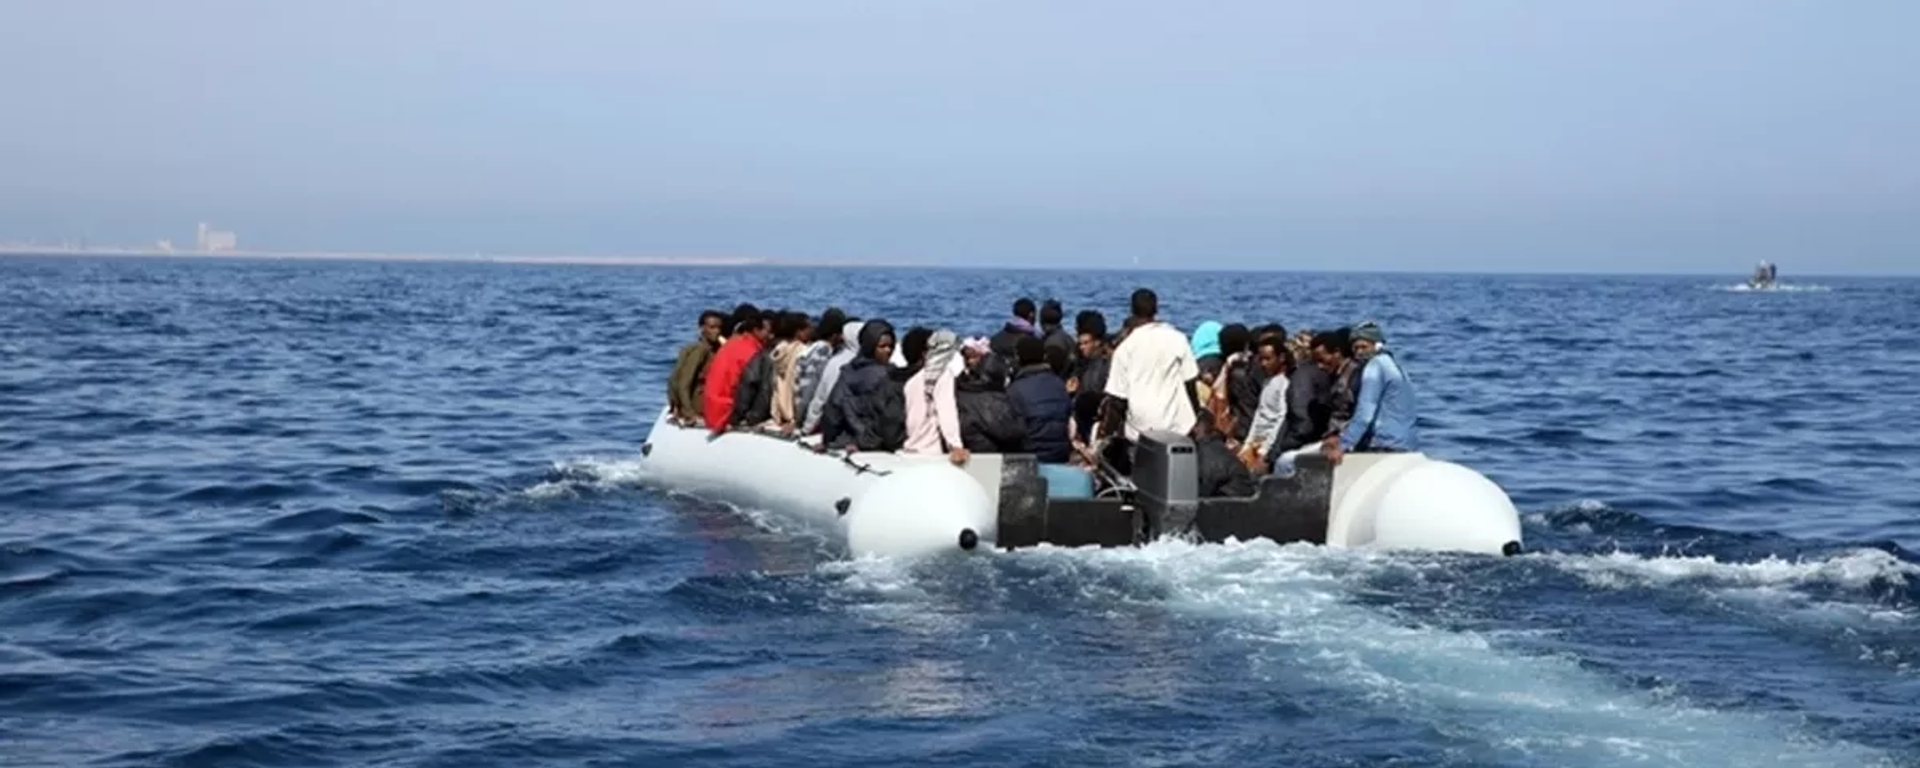 Libya’da insan tüccarlarının kaçırdığı 195 düzensiz göçmen kurtarıldı - Sputnik Türkiye, 1920, 12.07.2022